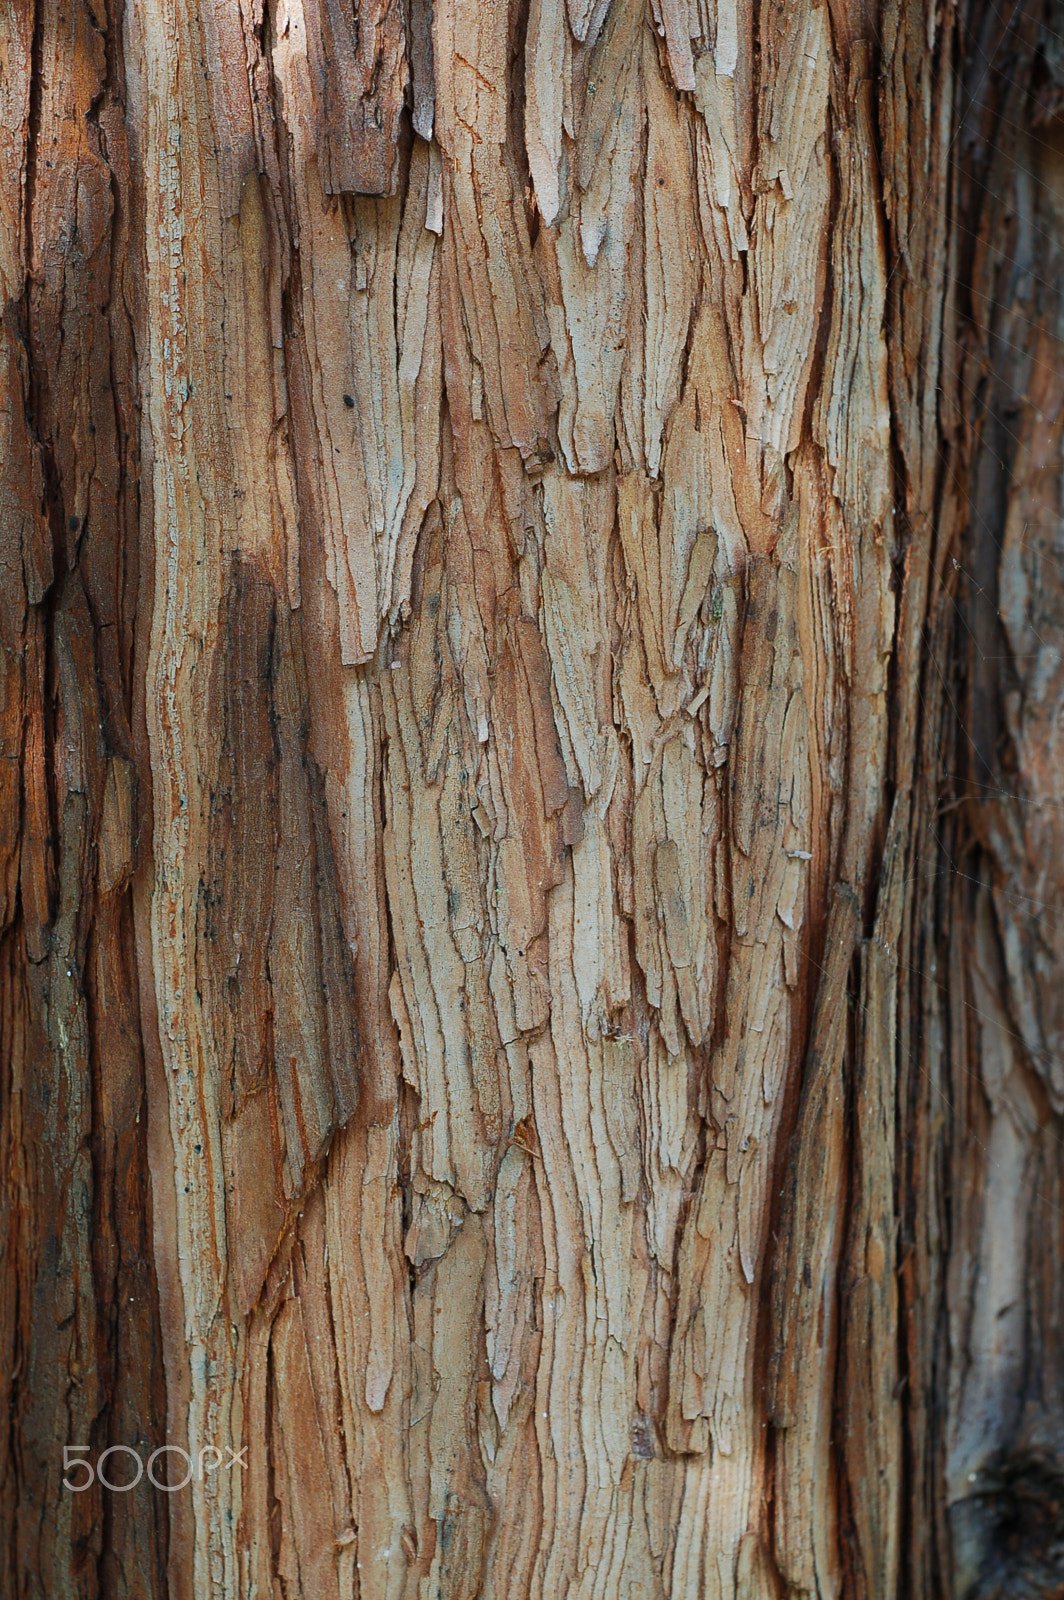 Nikon D50 + AF Nikkor 50mm f/1.8 sample photo. Tree bark photography